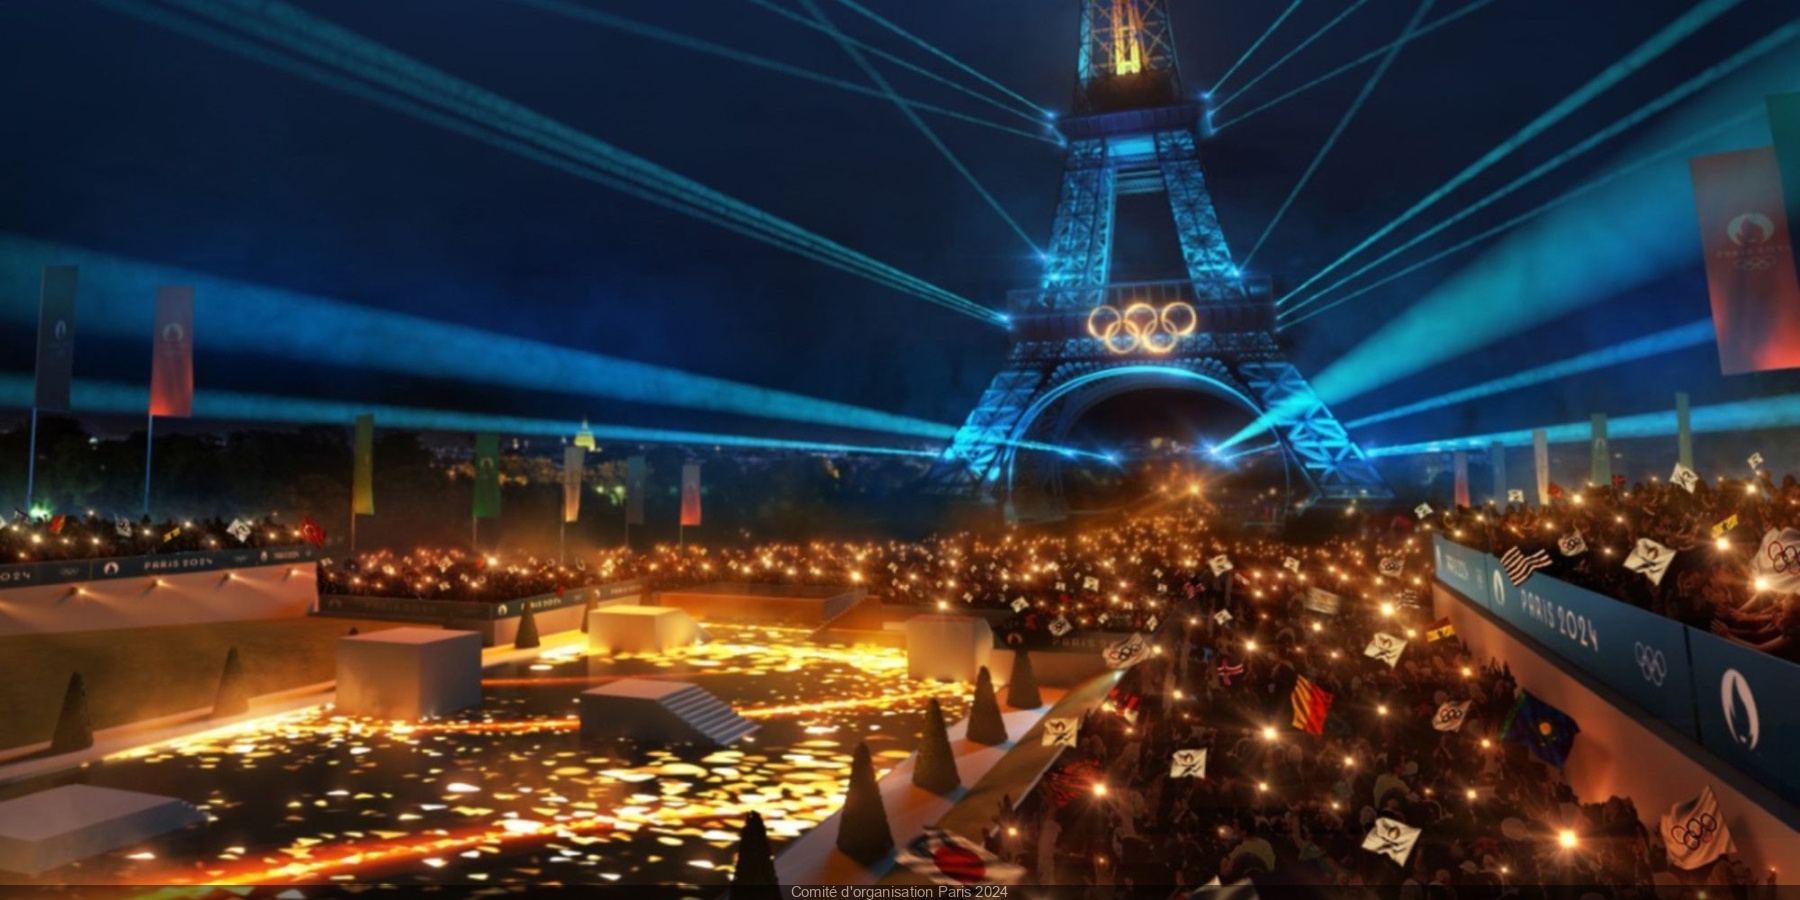 Paris 2024 bientôt des "olympistes", des pistes cyclables pour relier les sites olympiques